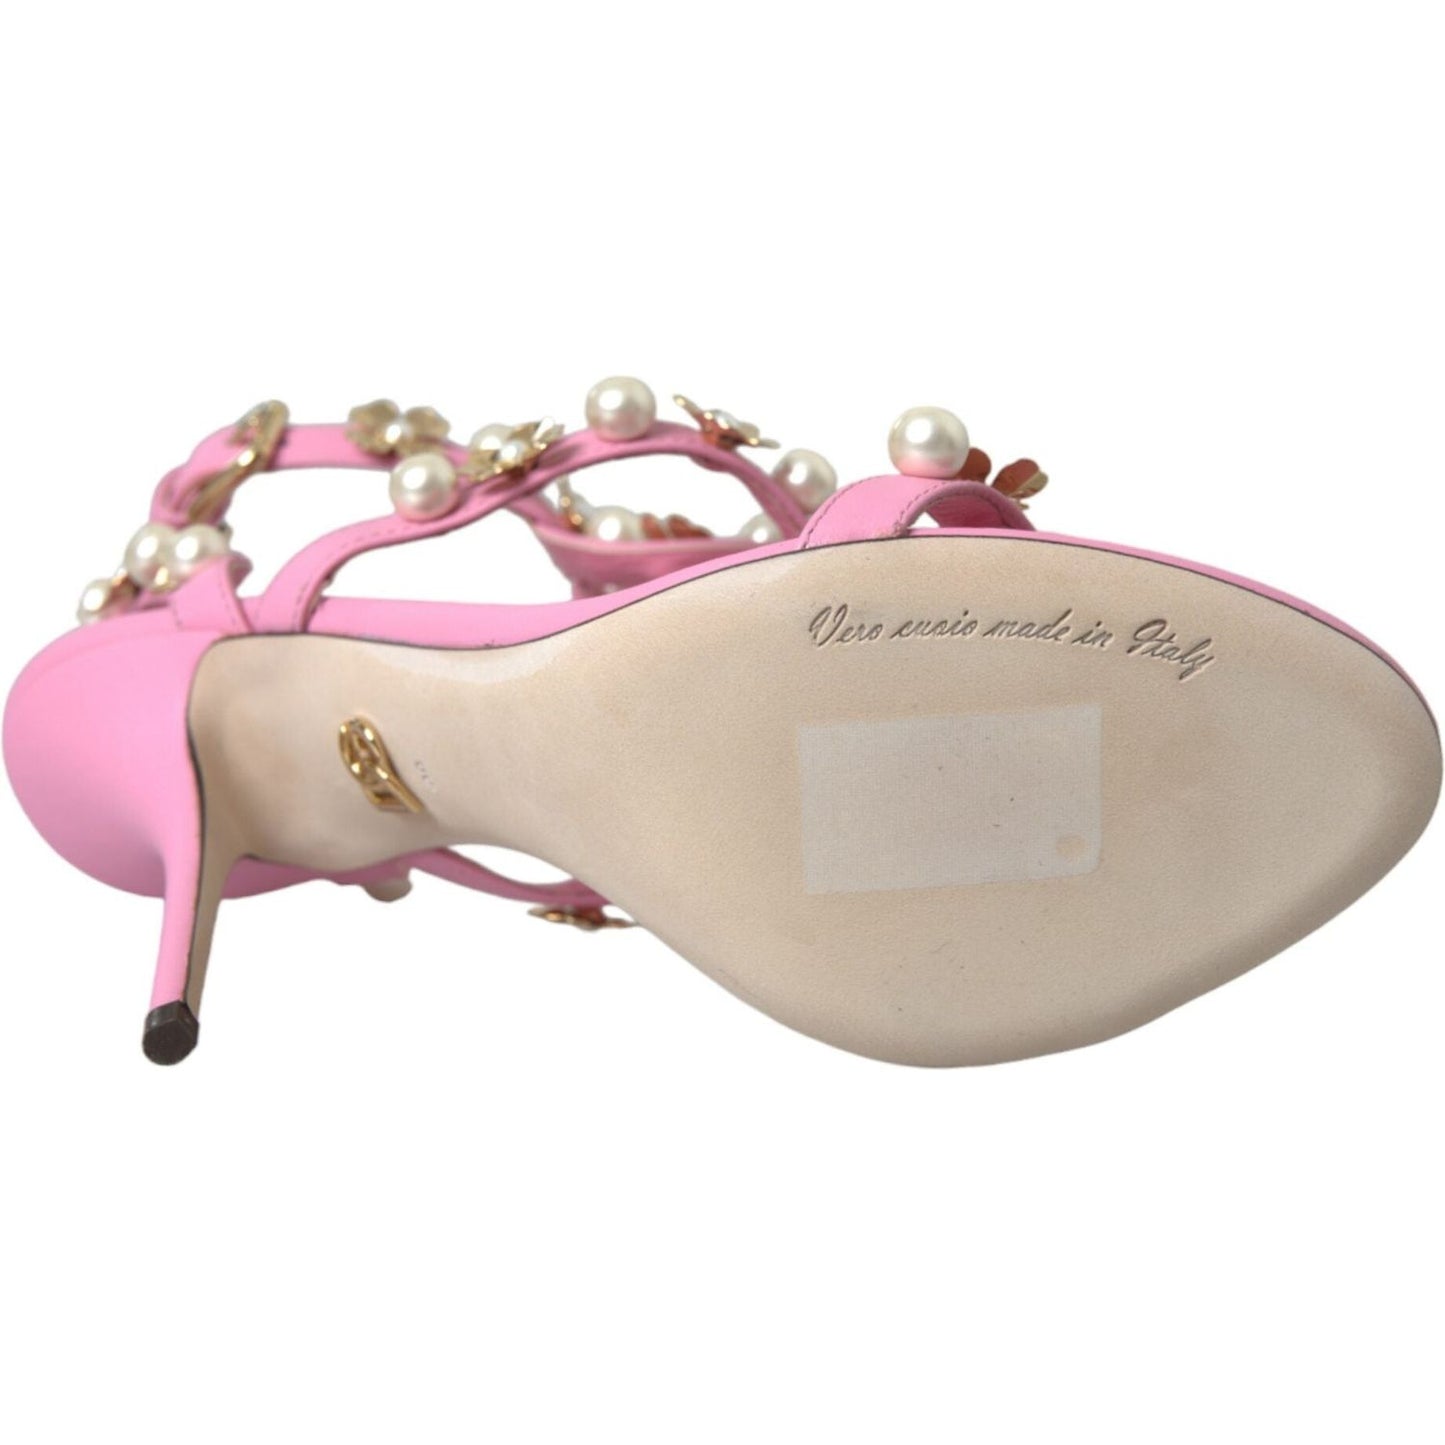 Dolce & Gabbana Pink Leather Embellished Heels Sandals Shoes pink-leather-embellished-heels-sandals-shoes-1